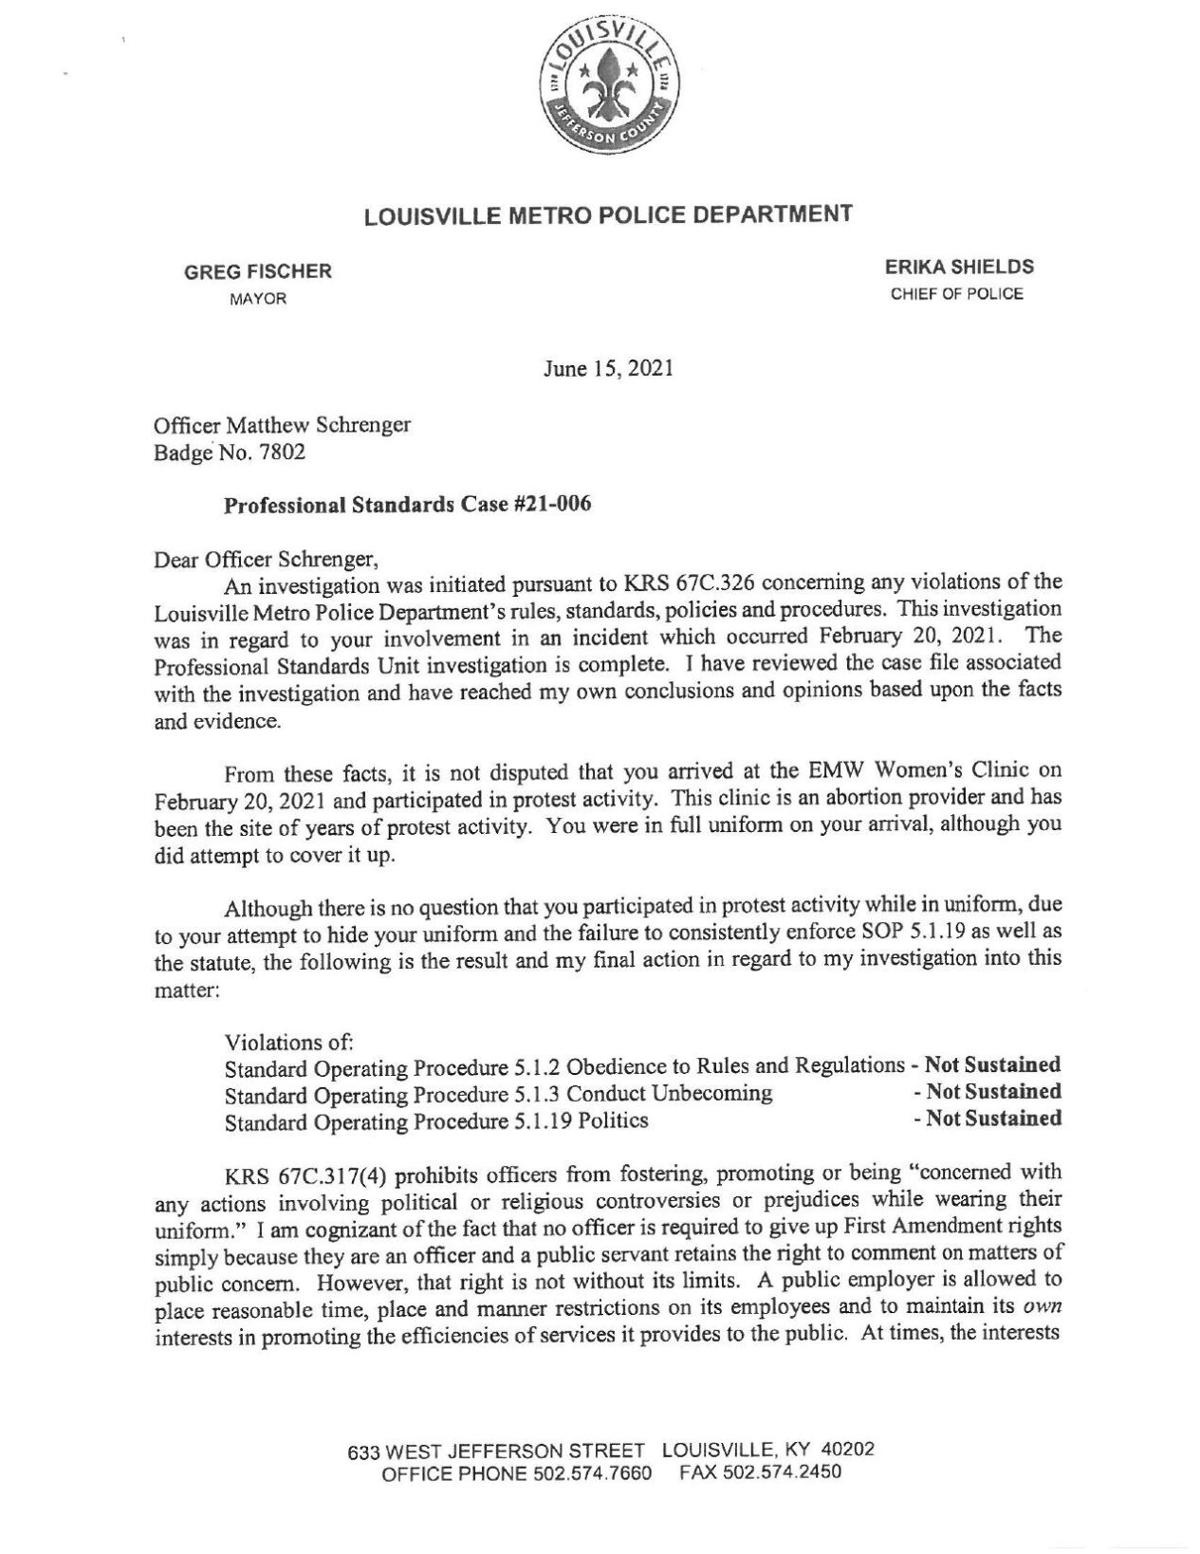 LMPD PSU investigation of Ofc. Matthew Schrenger